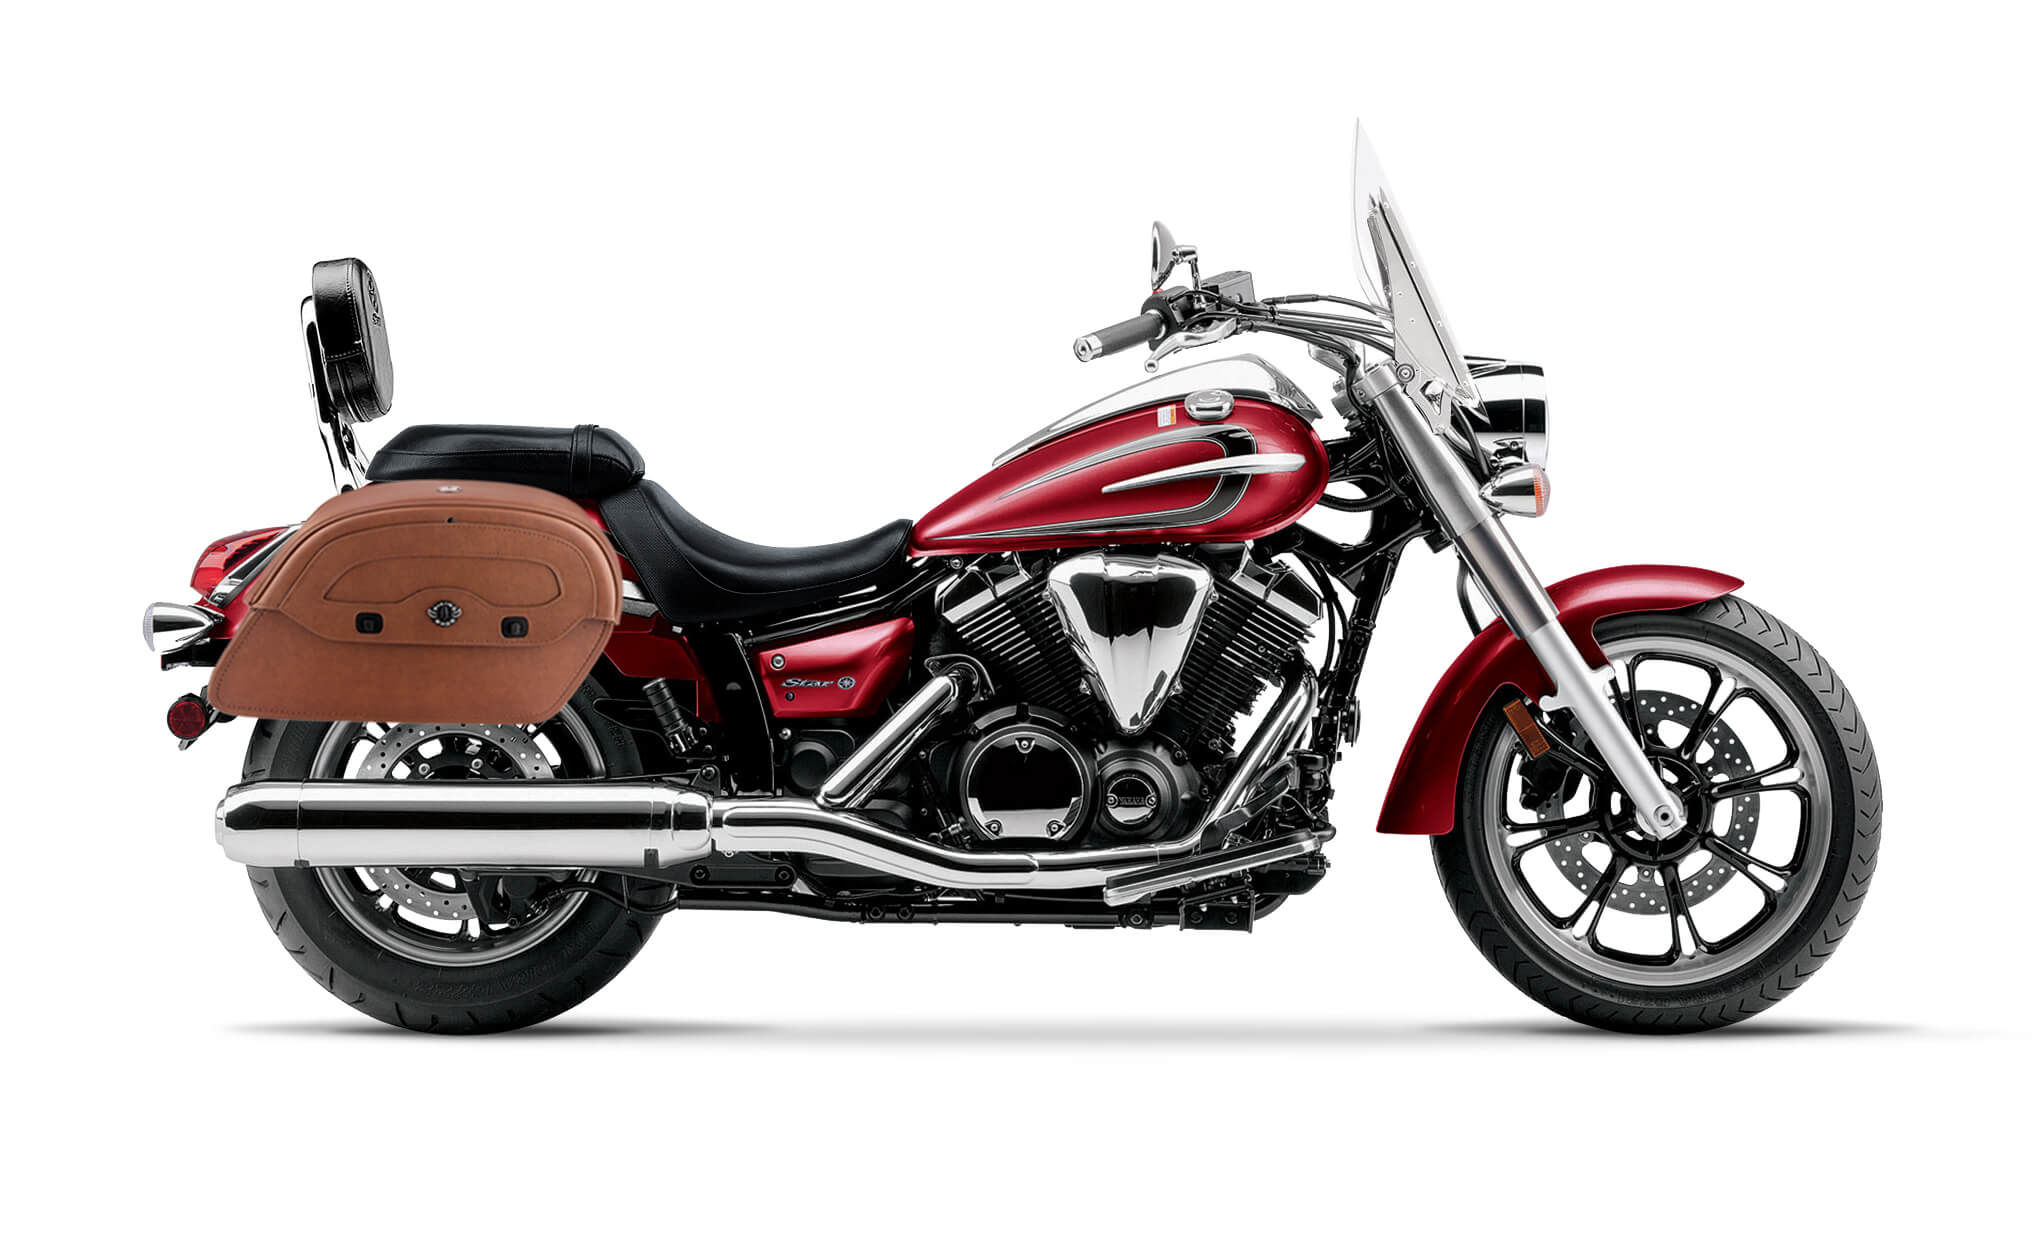 Viking Odin Brown Large Yamaha V Star 950 Tourer Leather Motorcycle Saddlebags on Bike Photo @expand